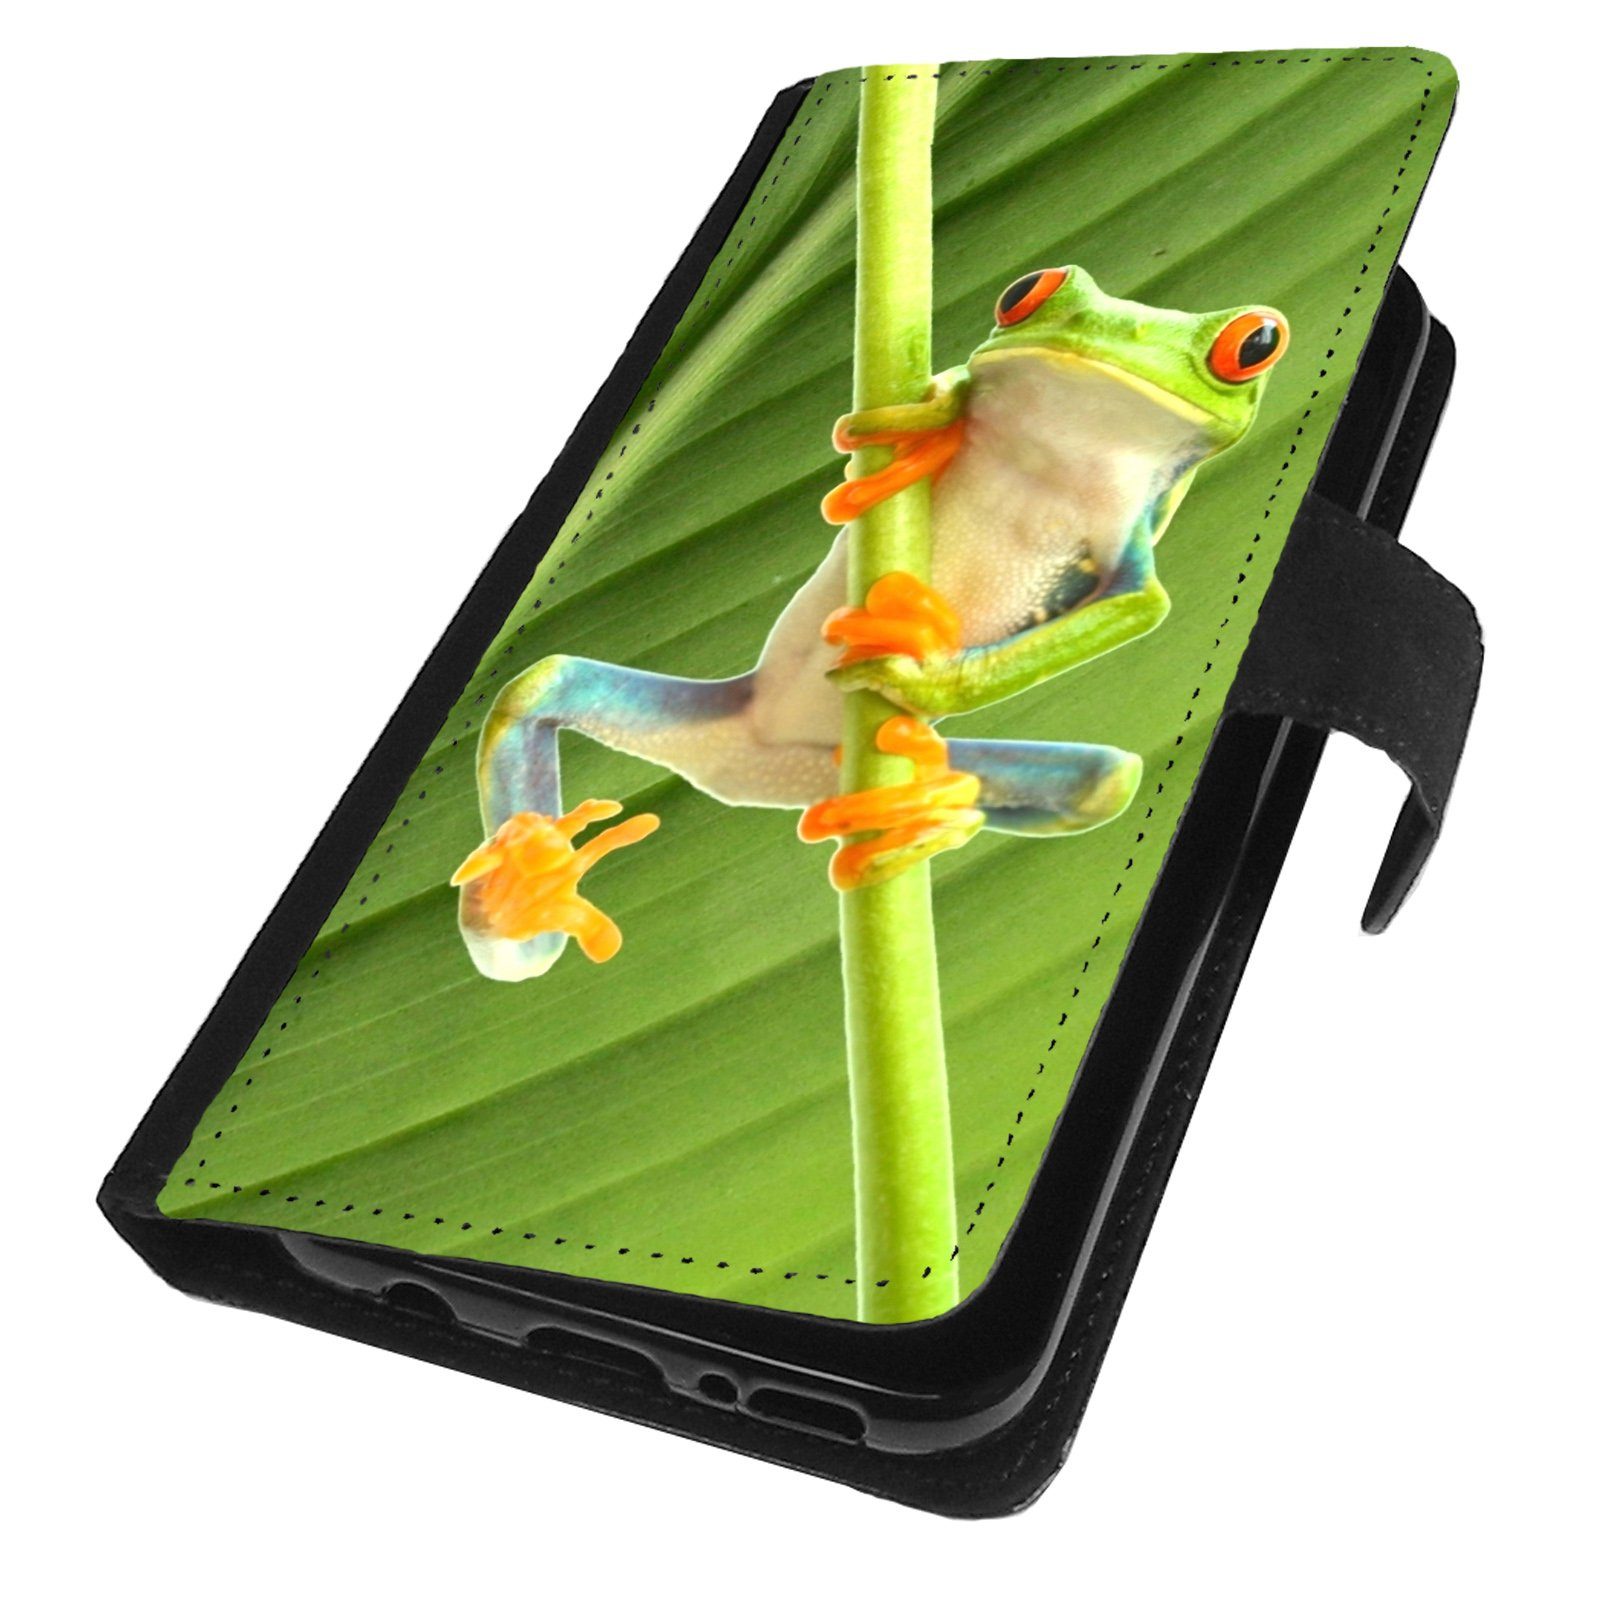 Traumhuelle Handyhülle MOTIV 268 Frosch Grün Hülle für iPhone Xiaomi Google Huawei Motorola, Klappcover Etui Handy Tasche Flip Case Schutz Cover Wallet Hülle